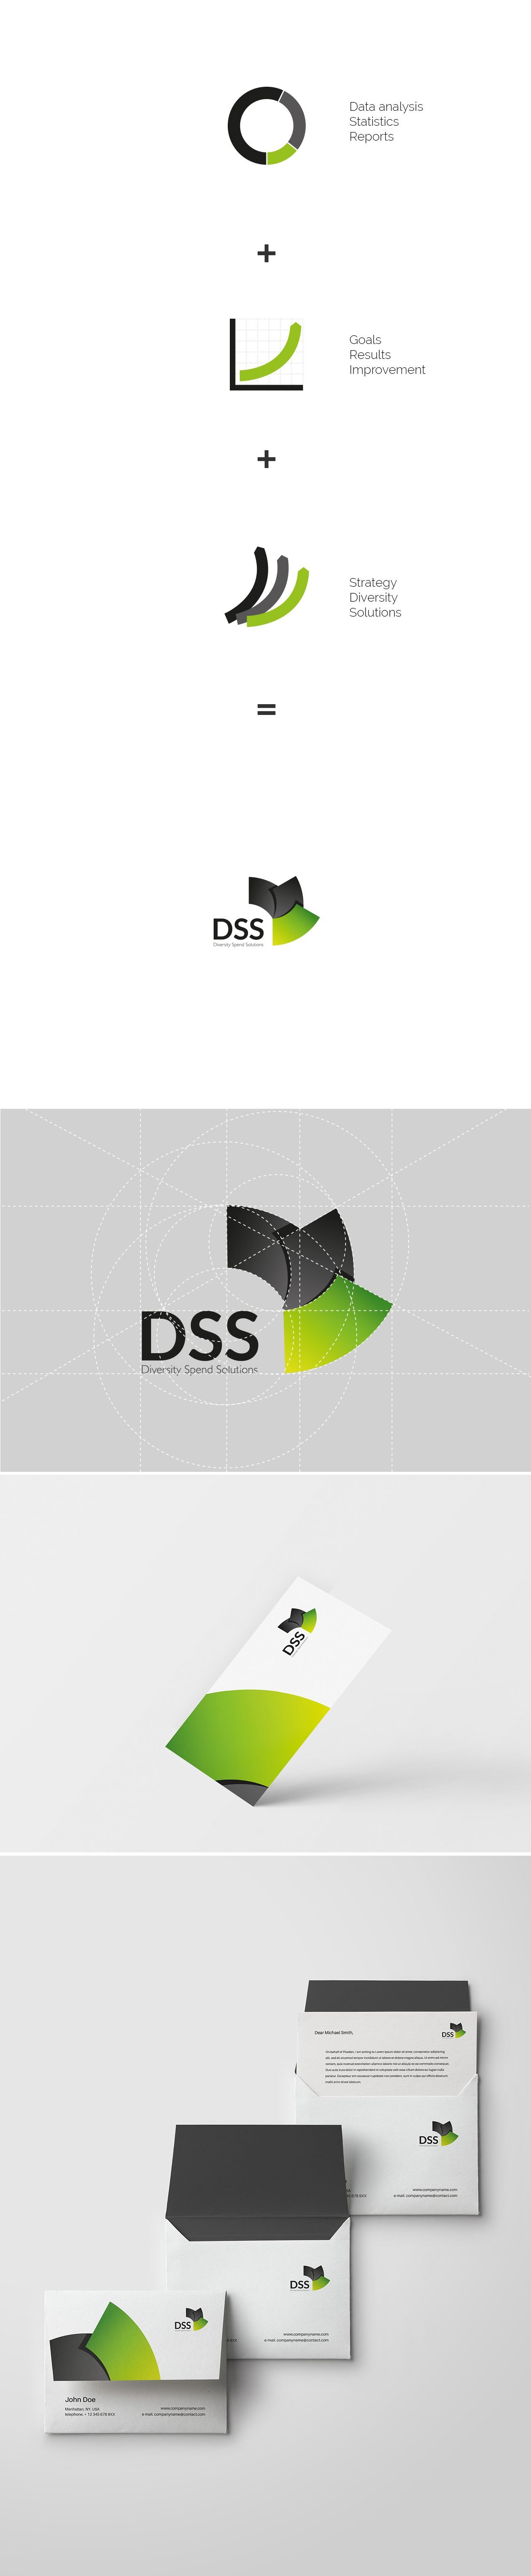 Design identidade visual | DSS